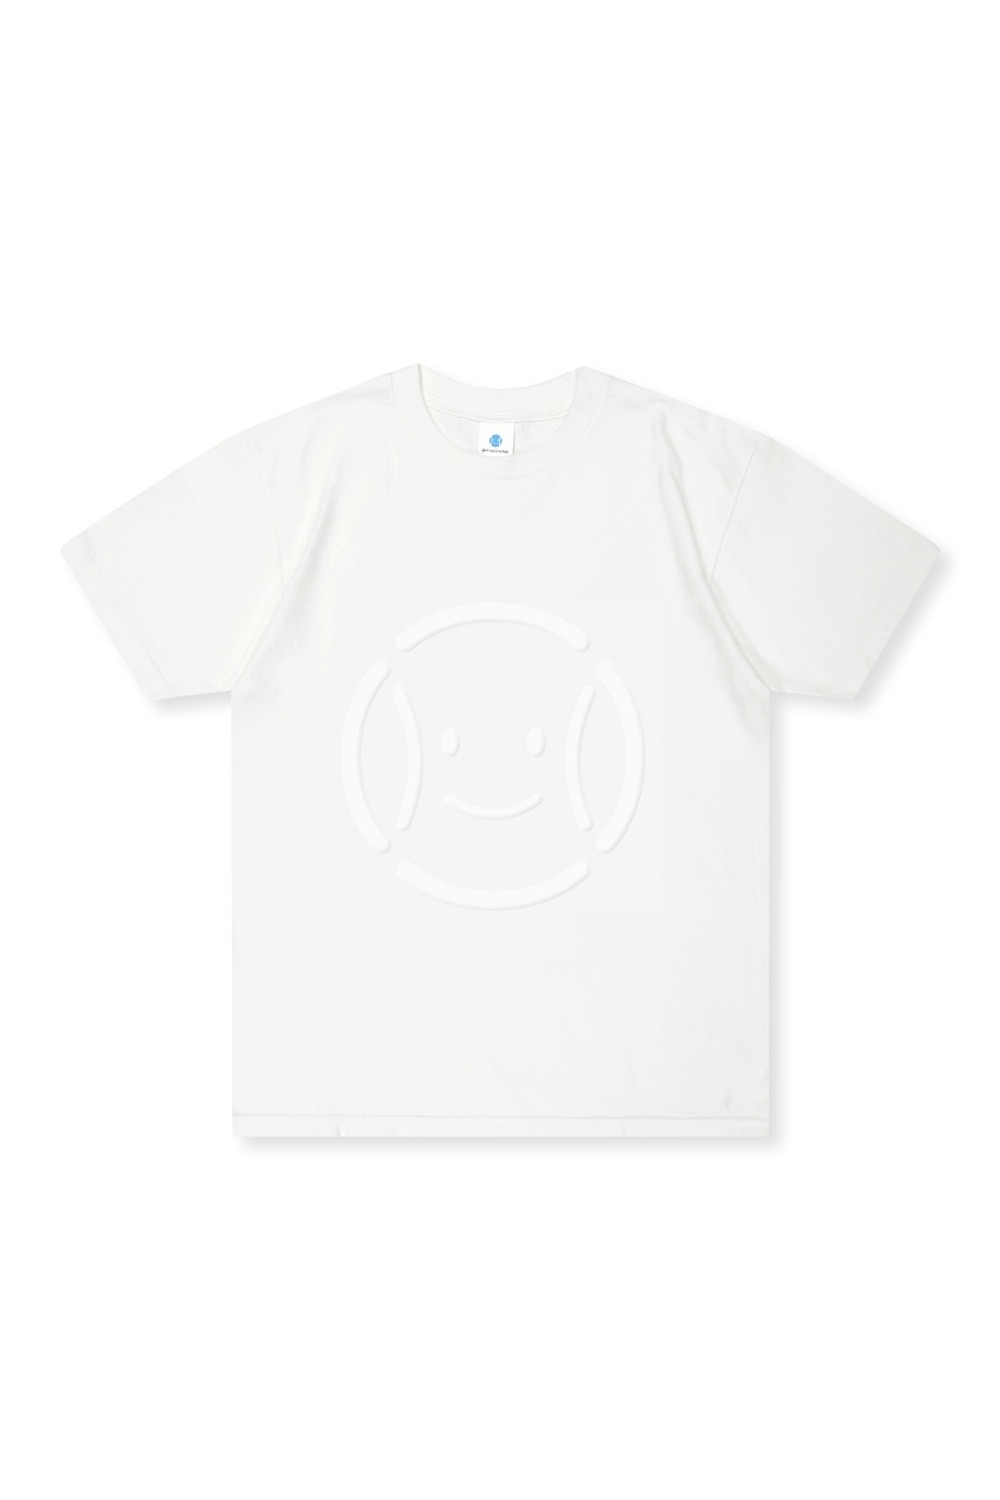 Tennis Nerd Ghost T-shirts (WHITE) RICHEZ